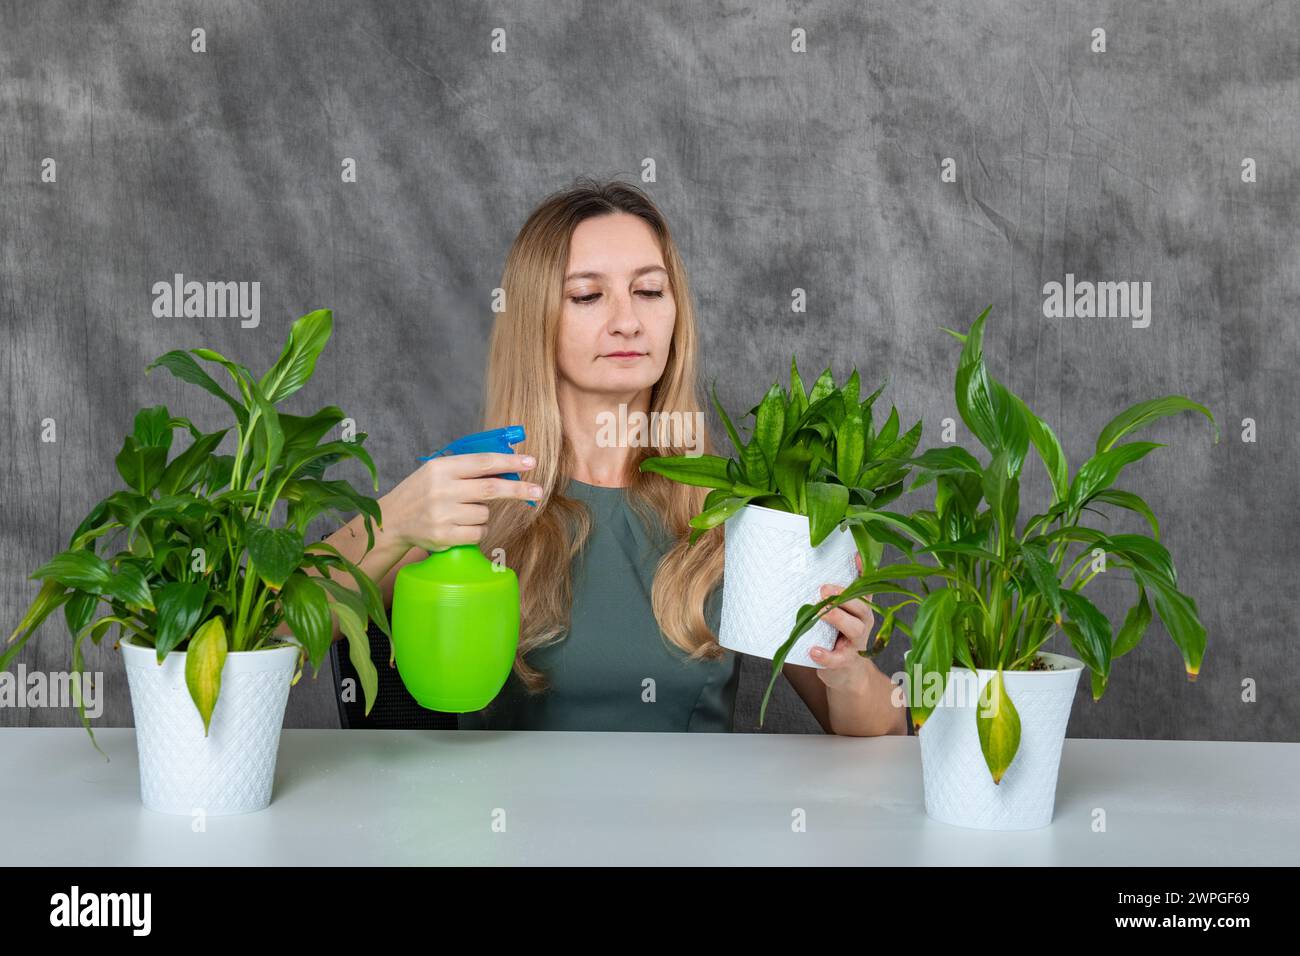 Junges Mädchen mit blondem Haar, das grüne Pflanzen pflegt, mit einem Sprinkler am Tisch Stockfoto